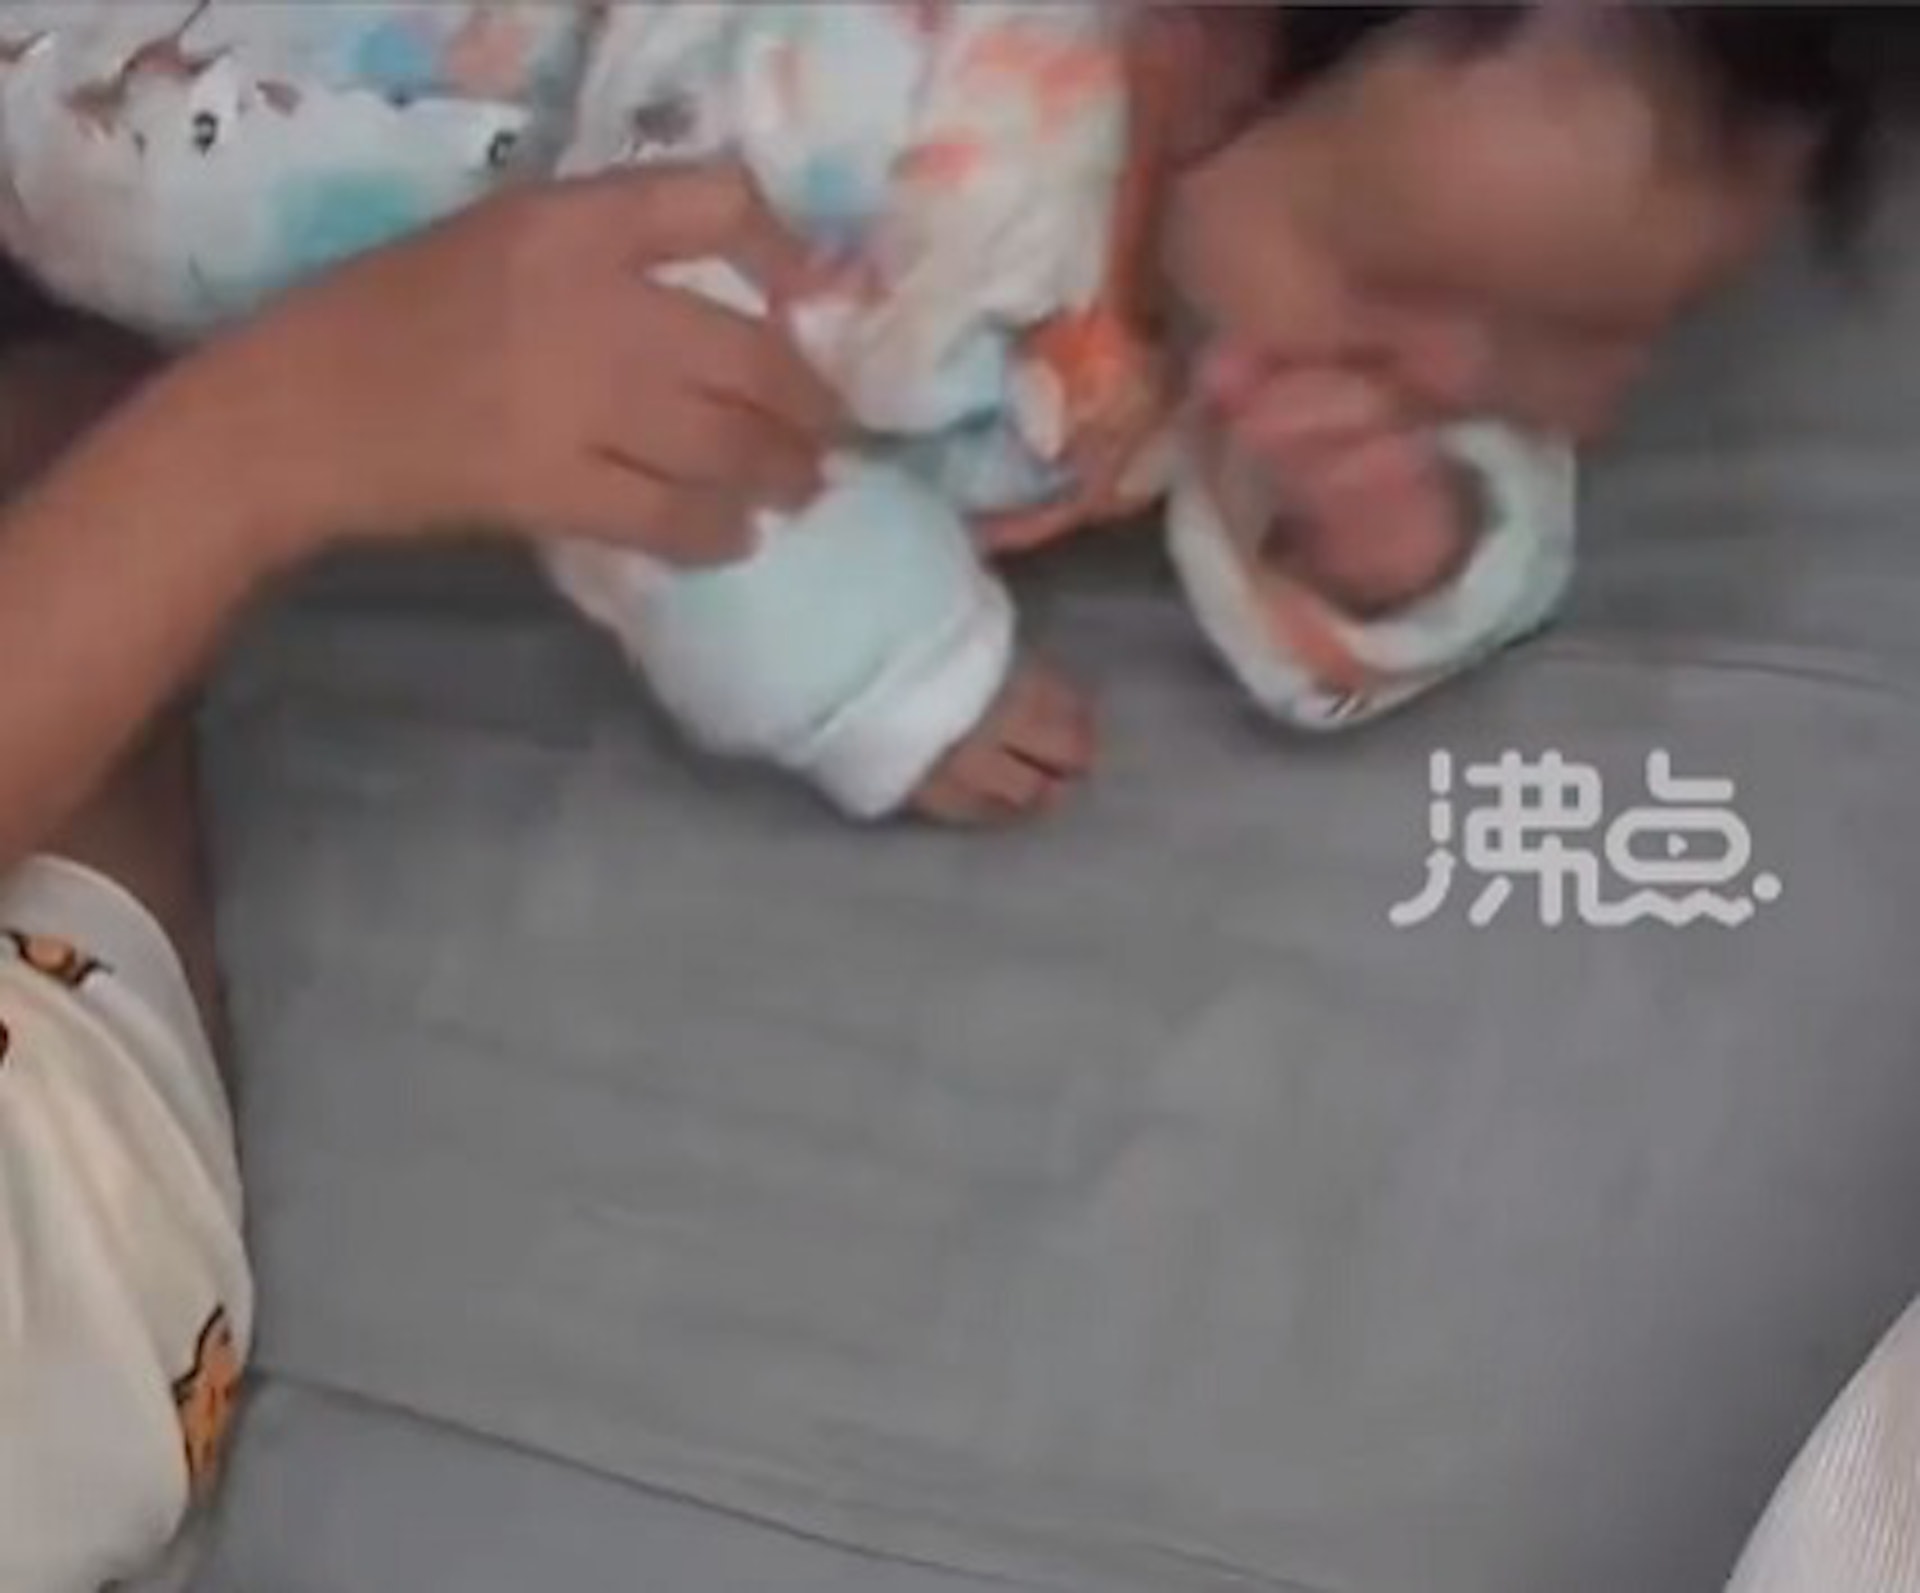 早前大陸湖南有一位媽媽，以為9個月大的寶寶要吐奶，趕緊為他拍背，沒想到寶寶咳一咳竟吐出一根尖銳圖釘，讓媽媽當場嚇傻，趕緊送醫。（沸點截圖）